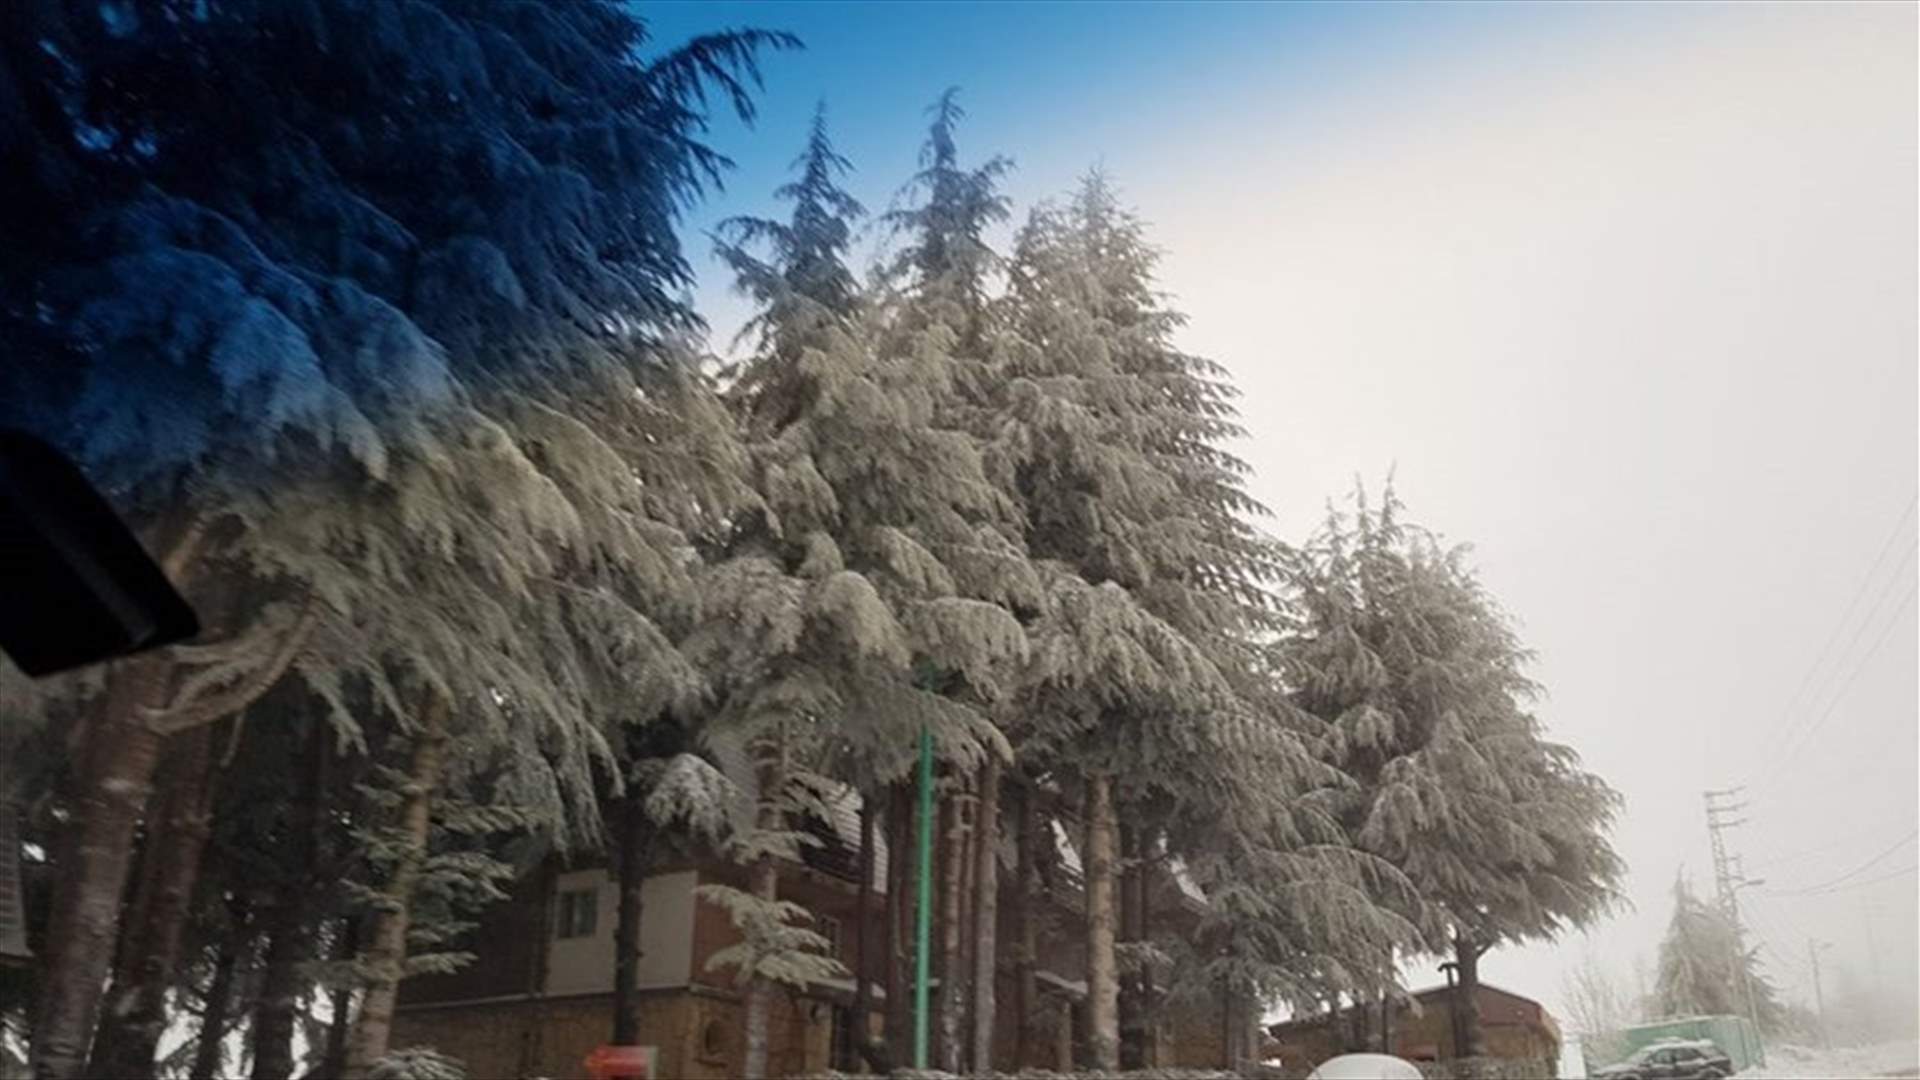 [PHOTOS] Storm spreads snow in Kfardebian